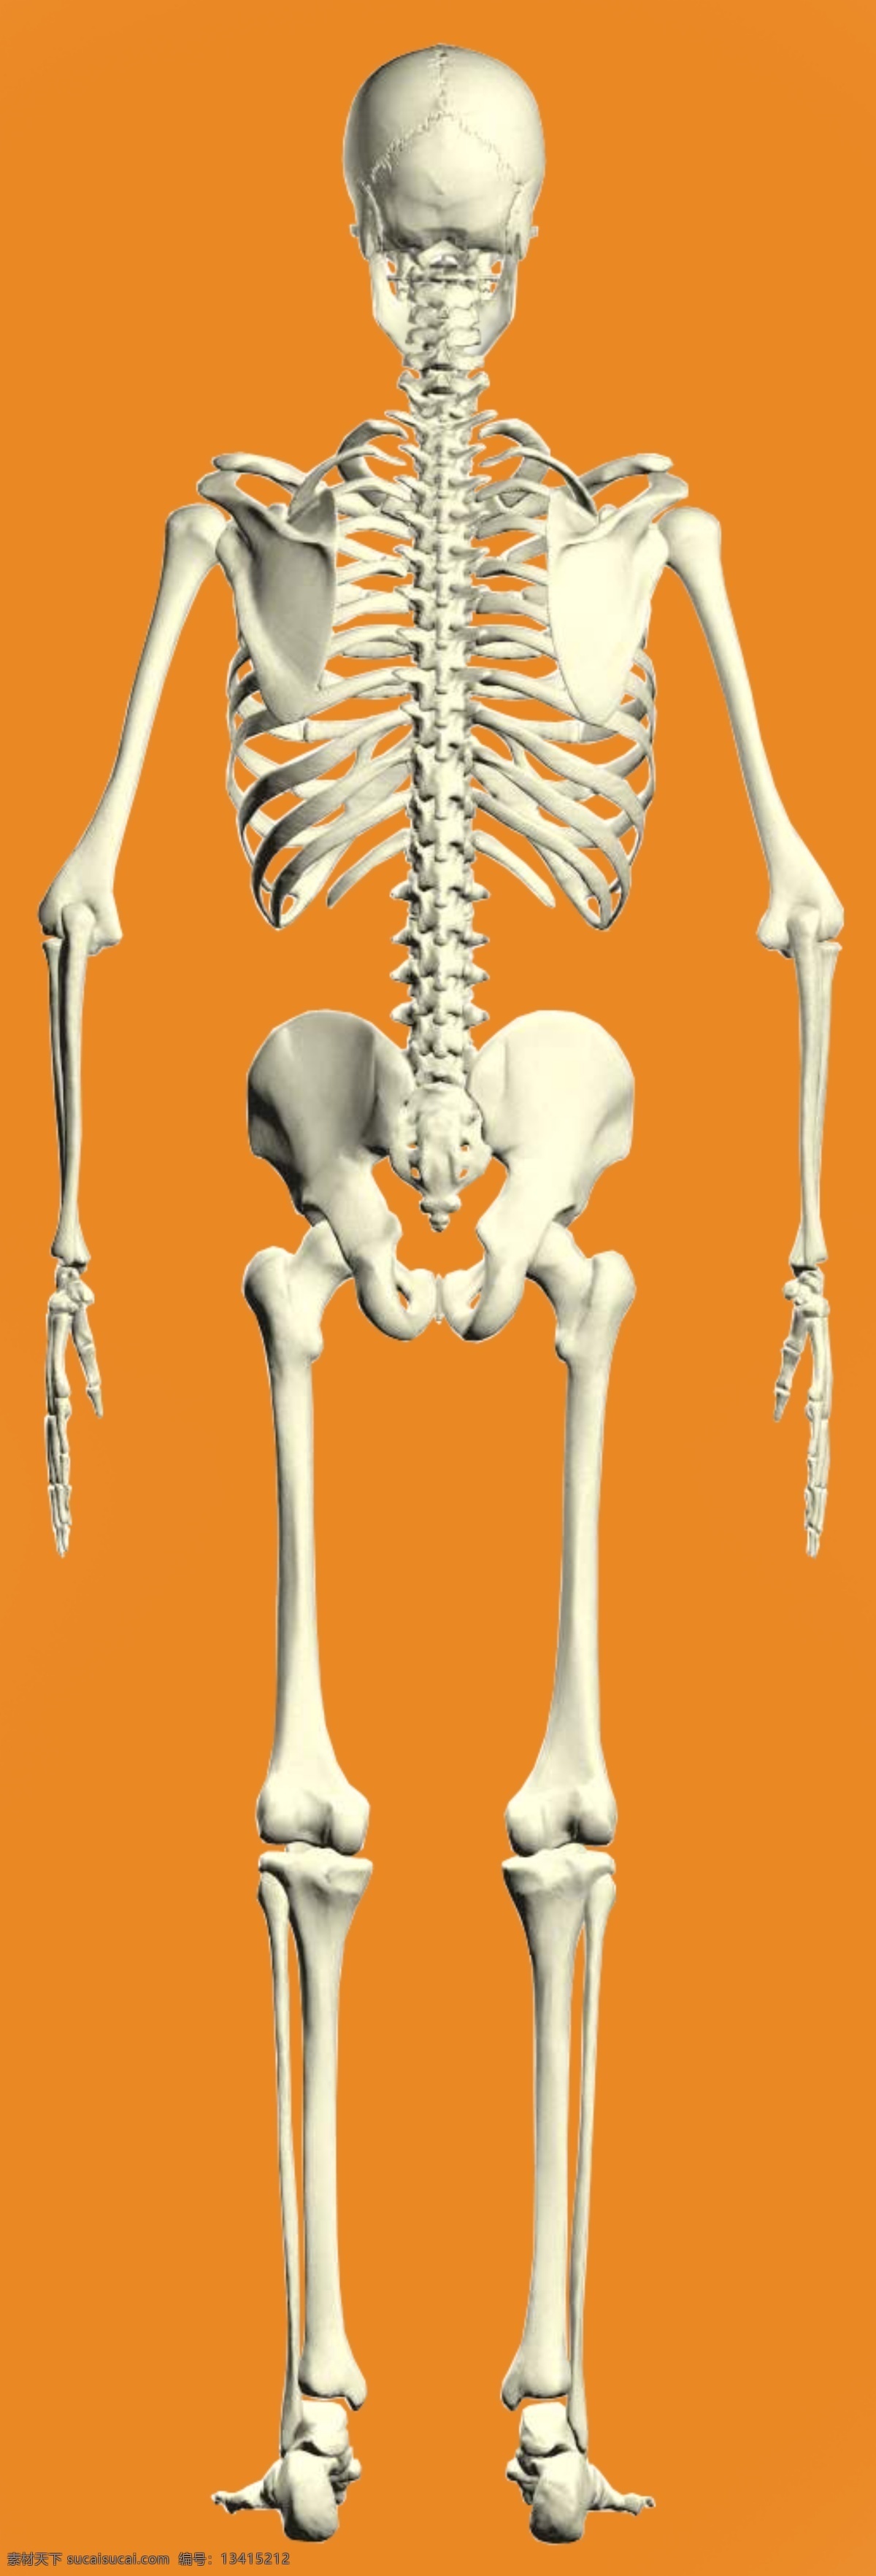 骨架 背面 精细 抠 图 人体骨架 人骨 骨头 骨骼 抠图 人物 分层 源文件